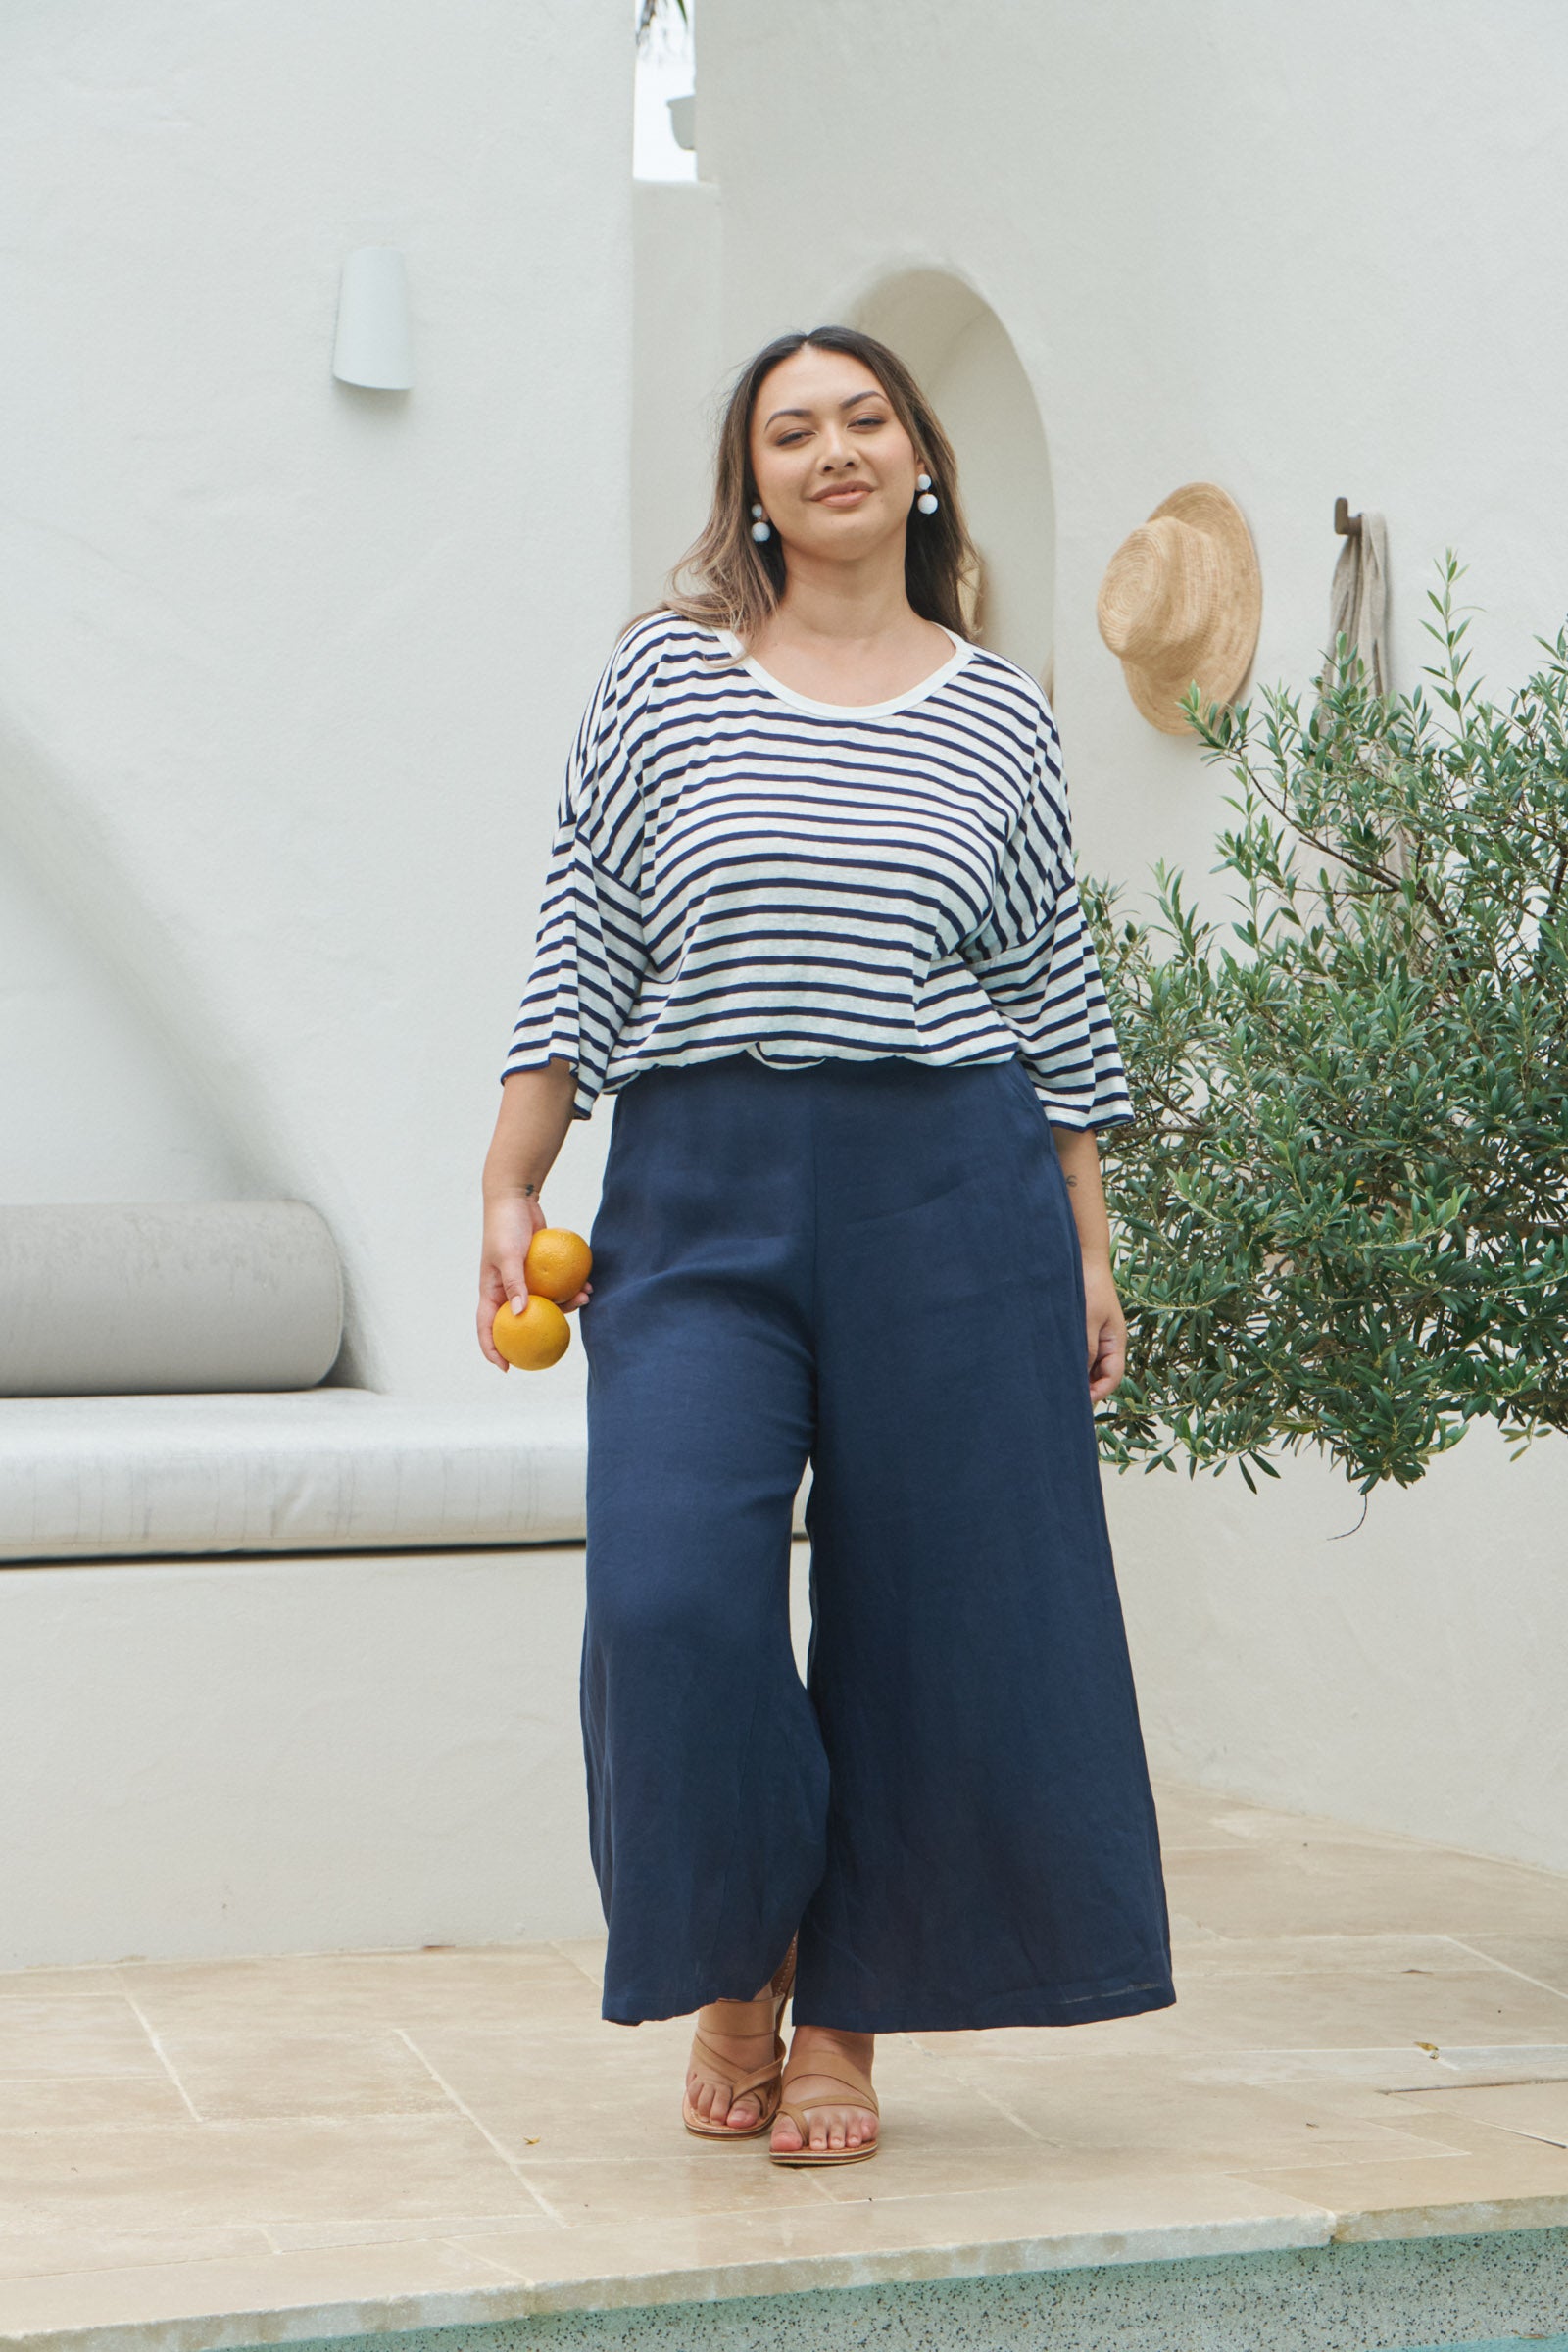 Intrepid Stripe Tshirt - Sapphire - eb&ive Clothing - Top Tshirt 3/4 Sleeve Linen